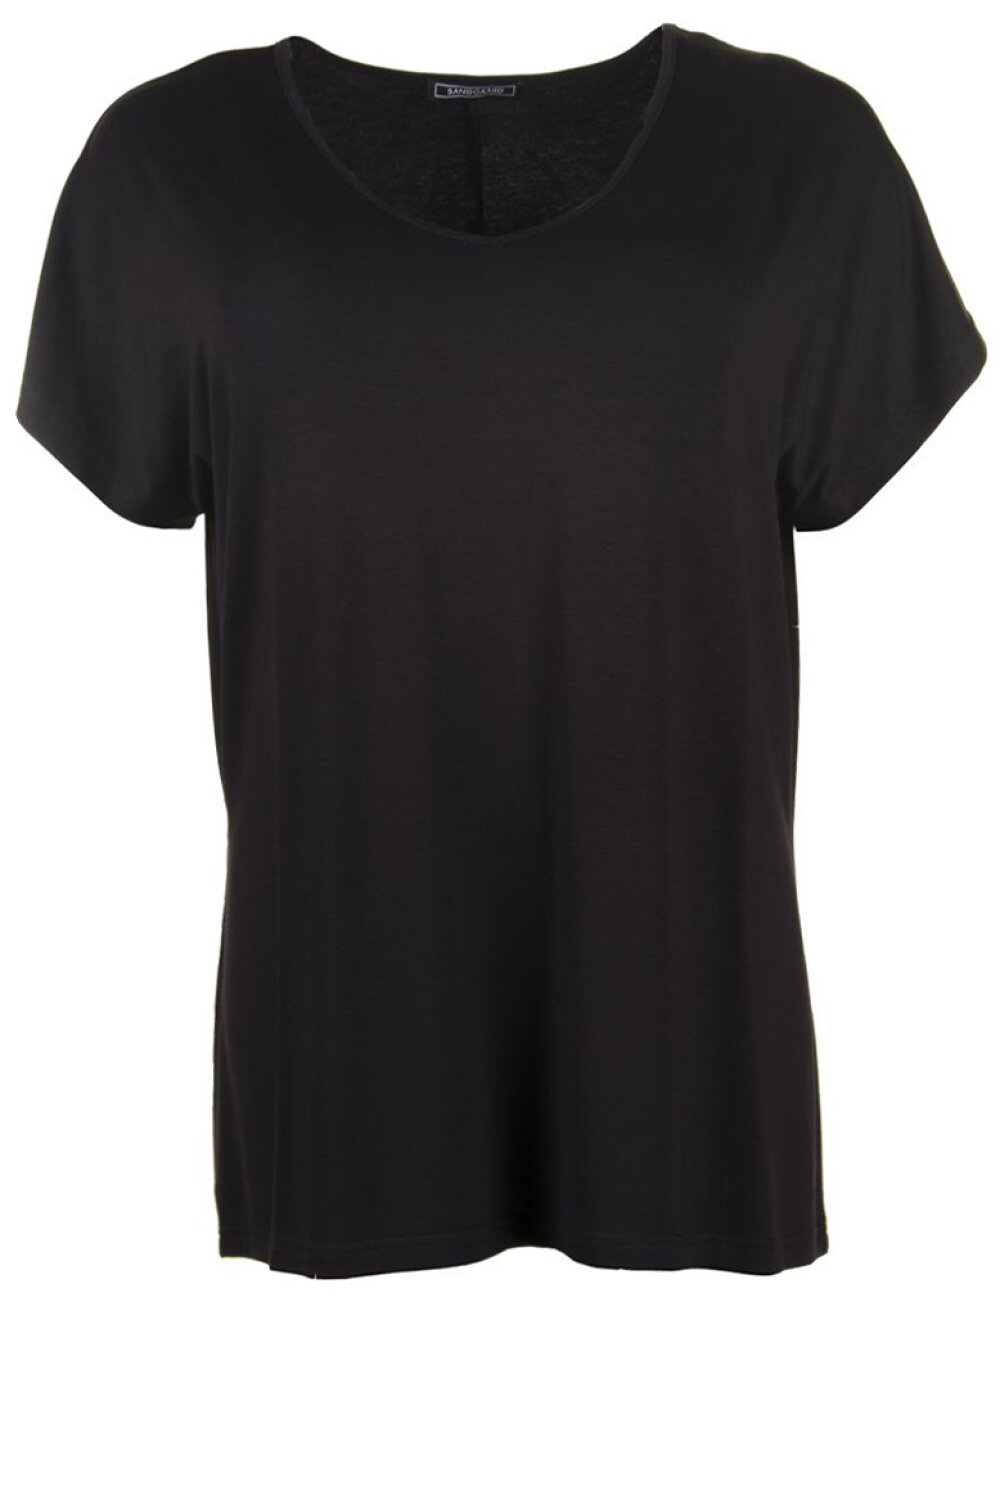 Pris sommer Retouch T-Shirts i store størrelser - Sandgaard - T-shirt